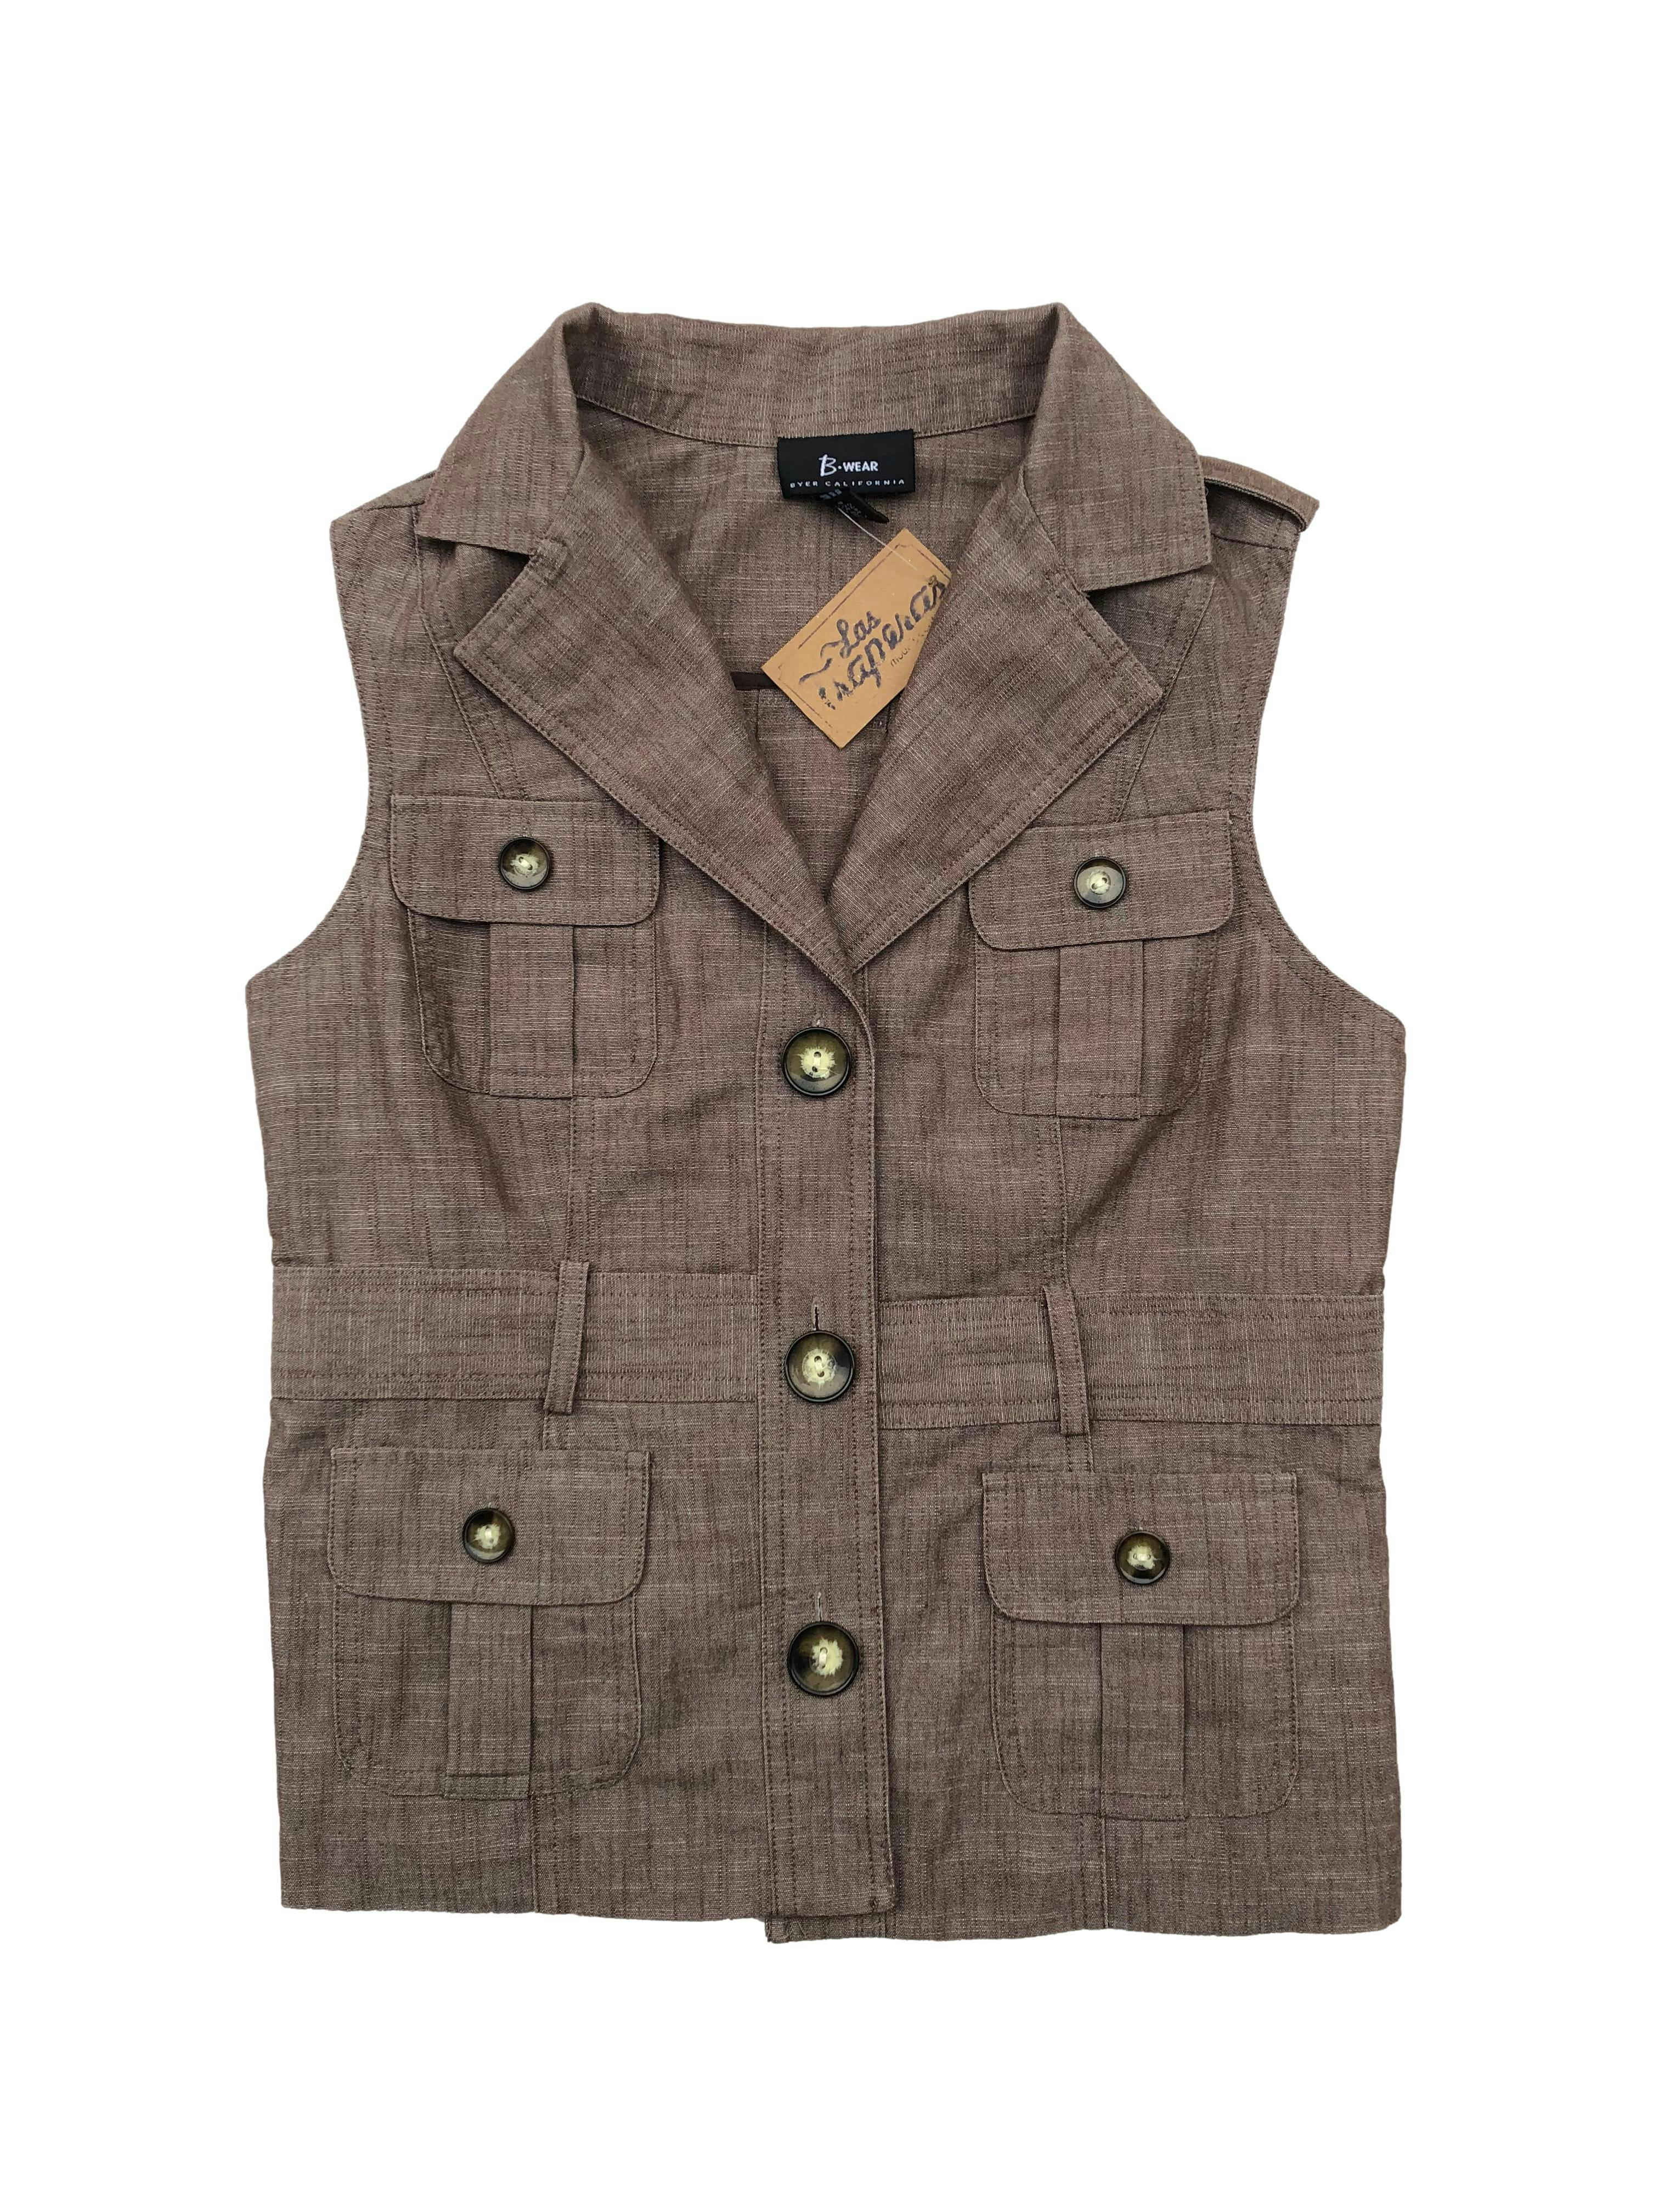 Chaleco marrón de textura tipo lino con bolsillos y botones delanteros. Busto 90cm Largo 52cm